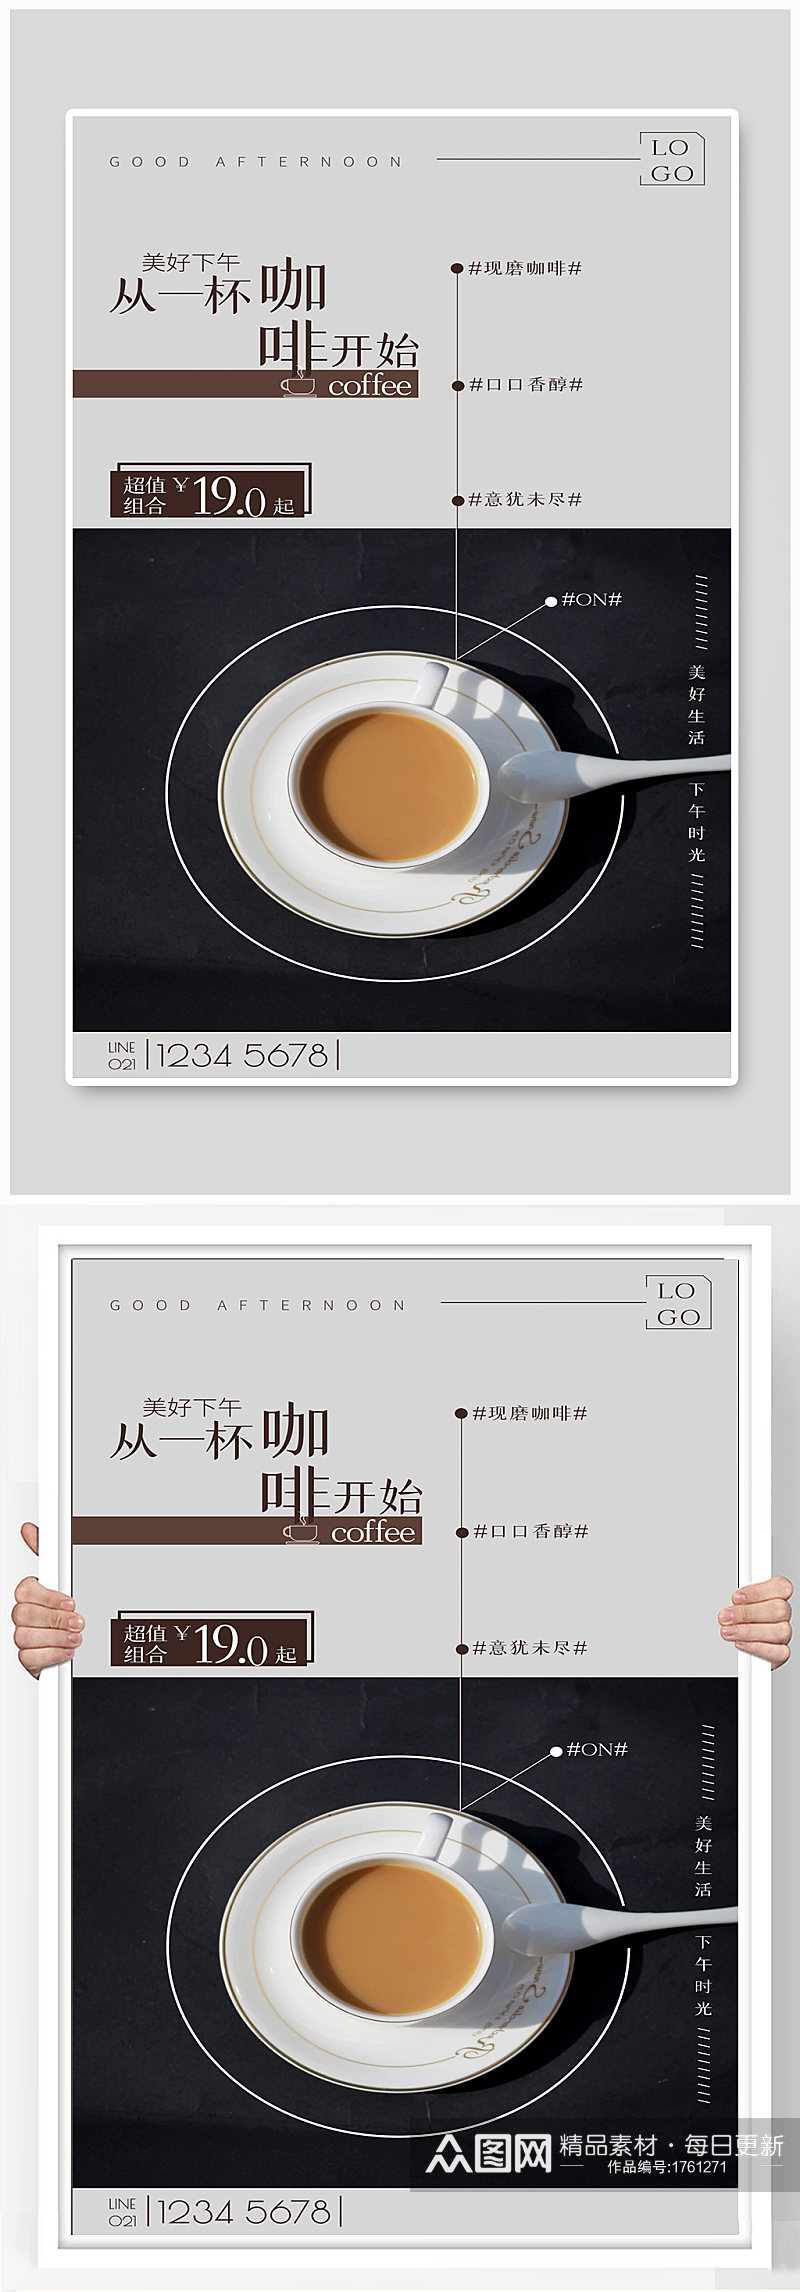 咖啡宣传海报设计制作素材